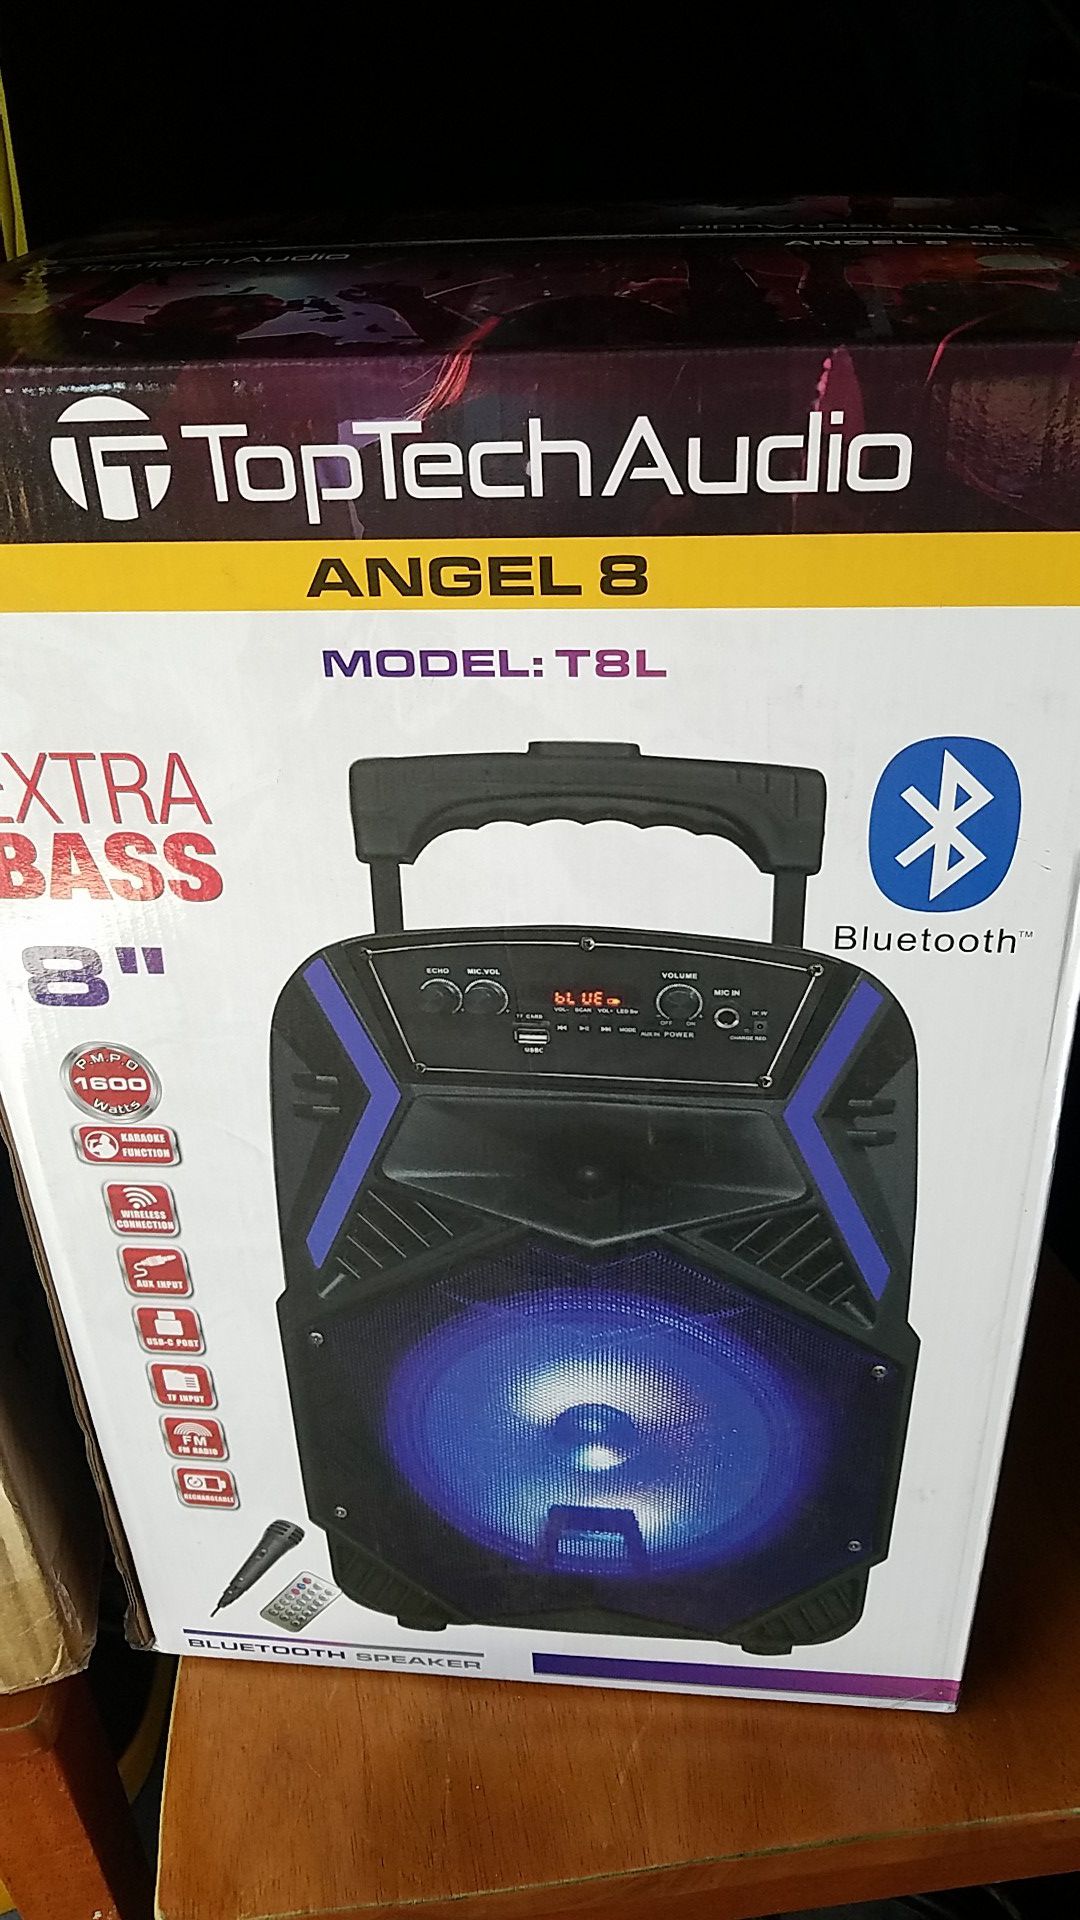 Top tech audio speaker.